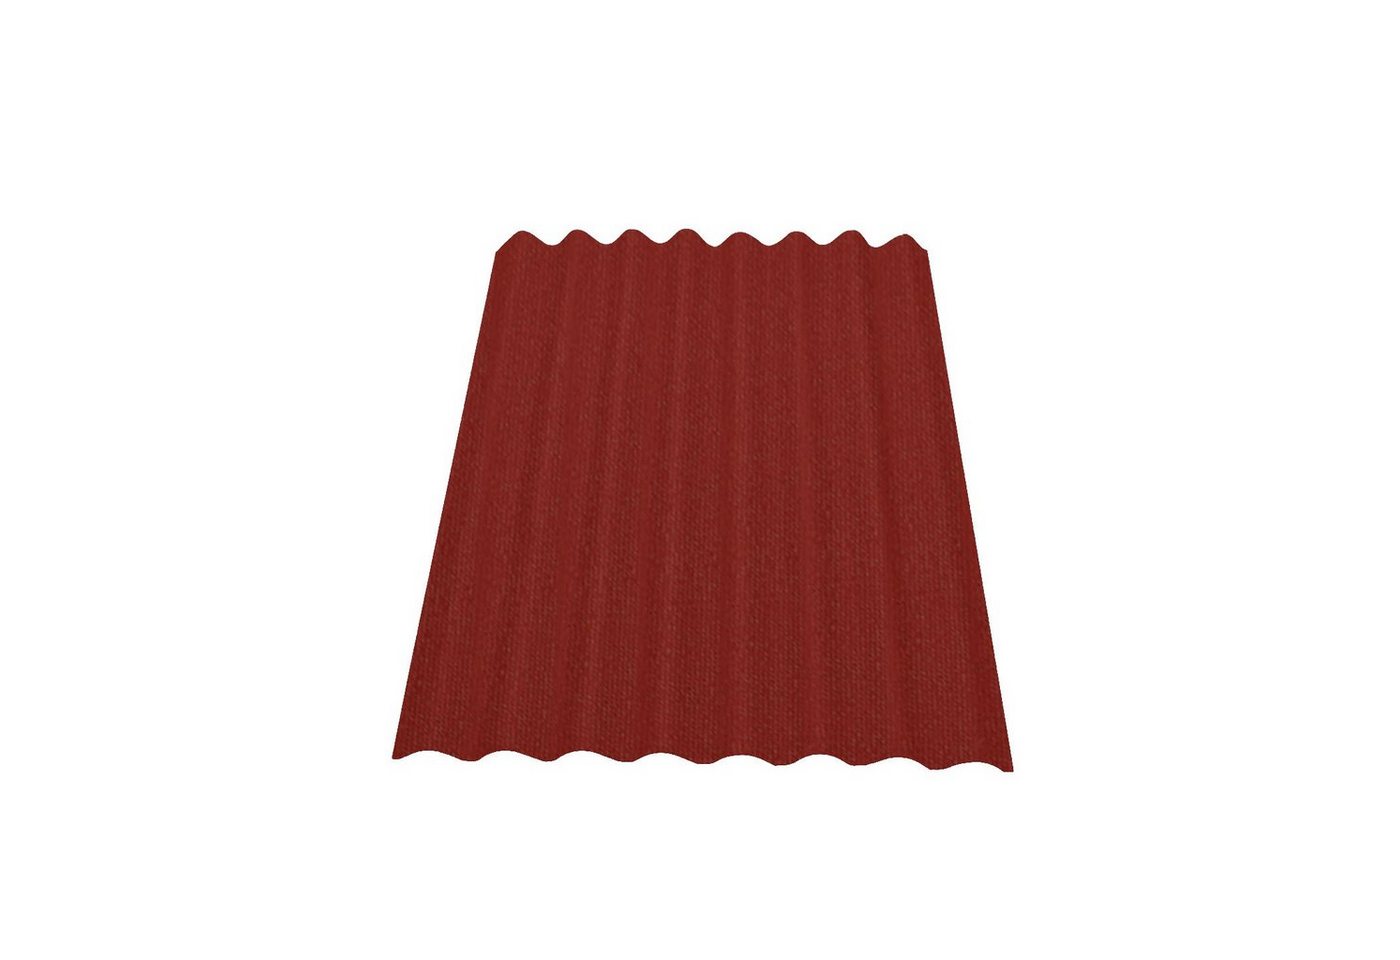 Onduline Dachpappe Onduline Easyline Dachplatte Wandplatte Bitumen Wellplatte 1x0,76m - rot, wellig, (1-St) von Onduline